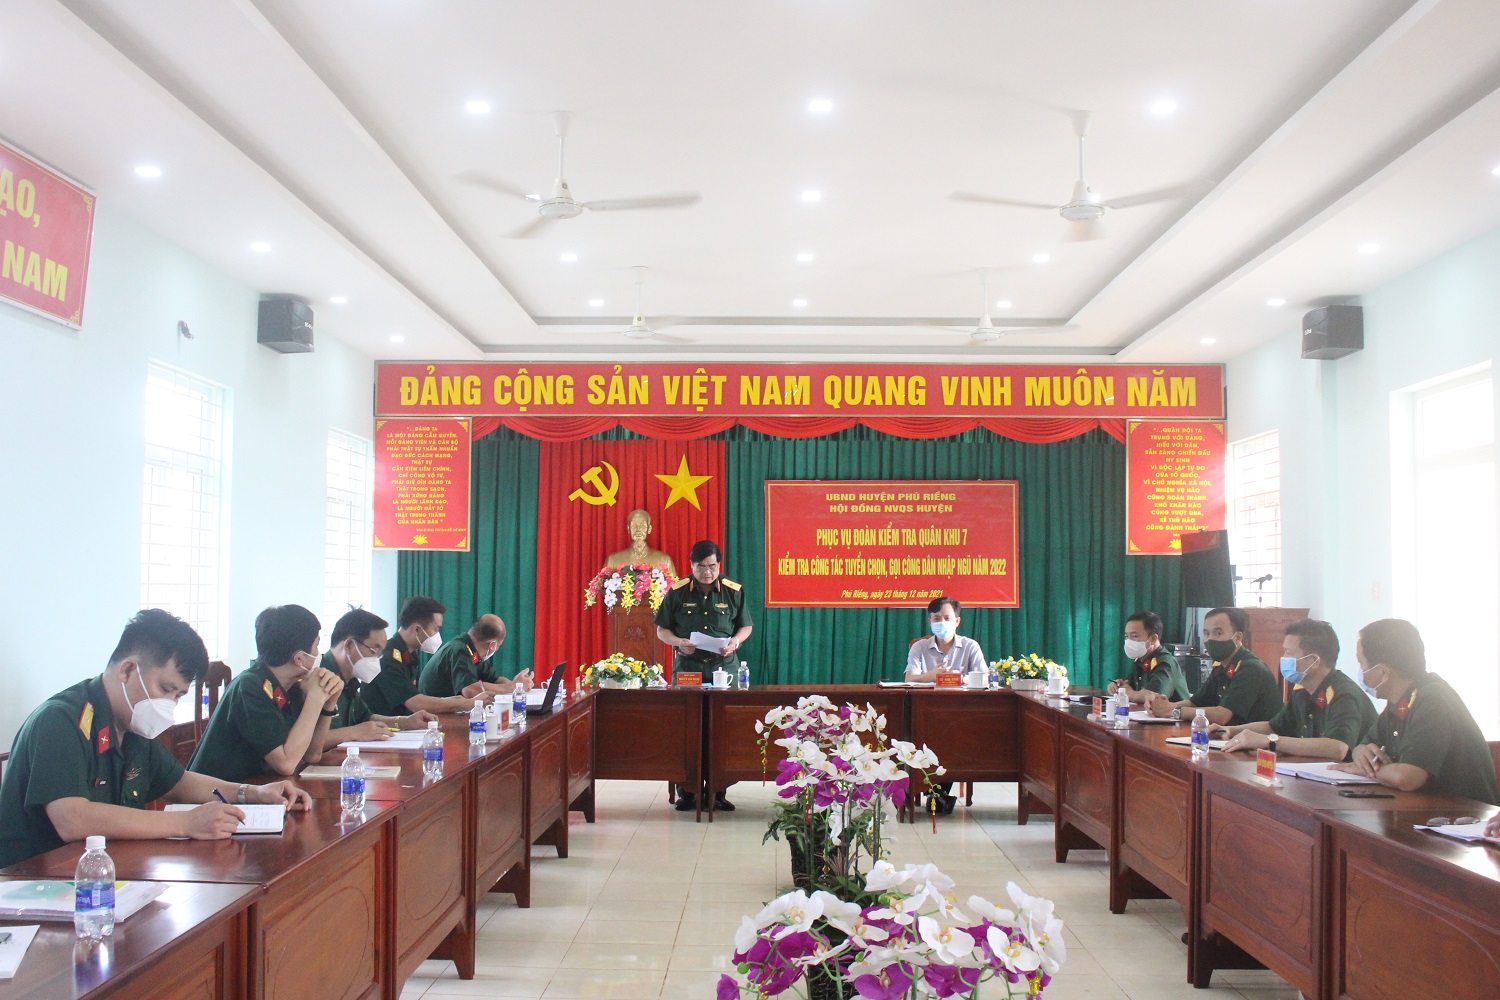 Thiếu tướng Nguyễn Văn Hoàng đánh giá cao công tác tuyển chọn gọi công dân nhập ngũ của huyện Phú Riềng.